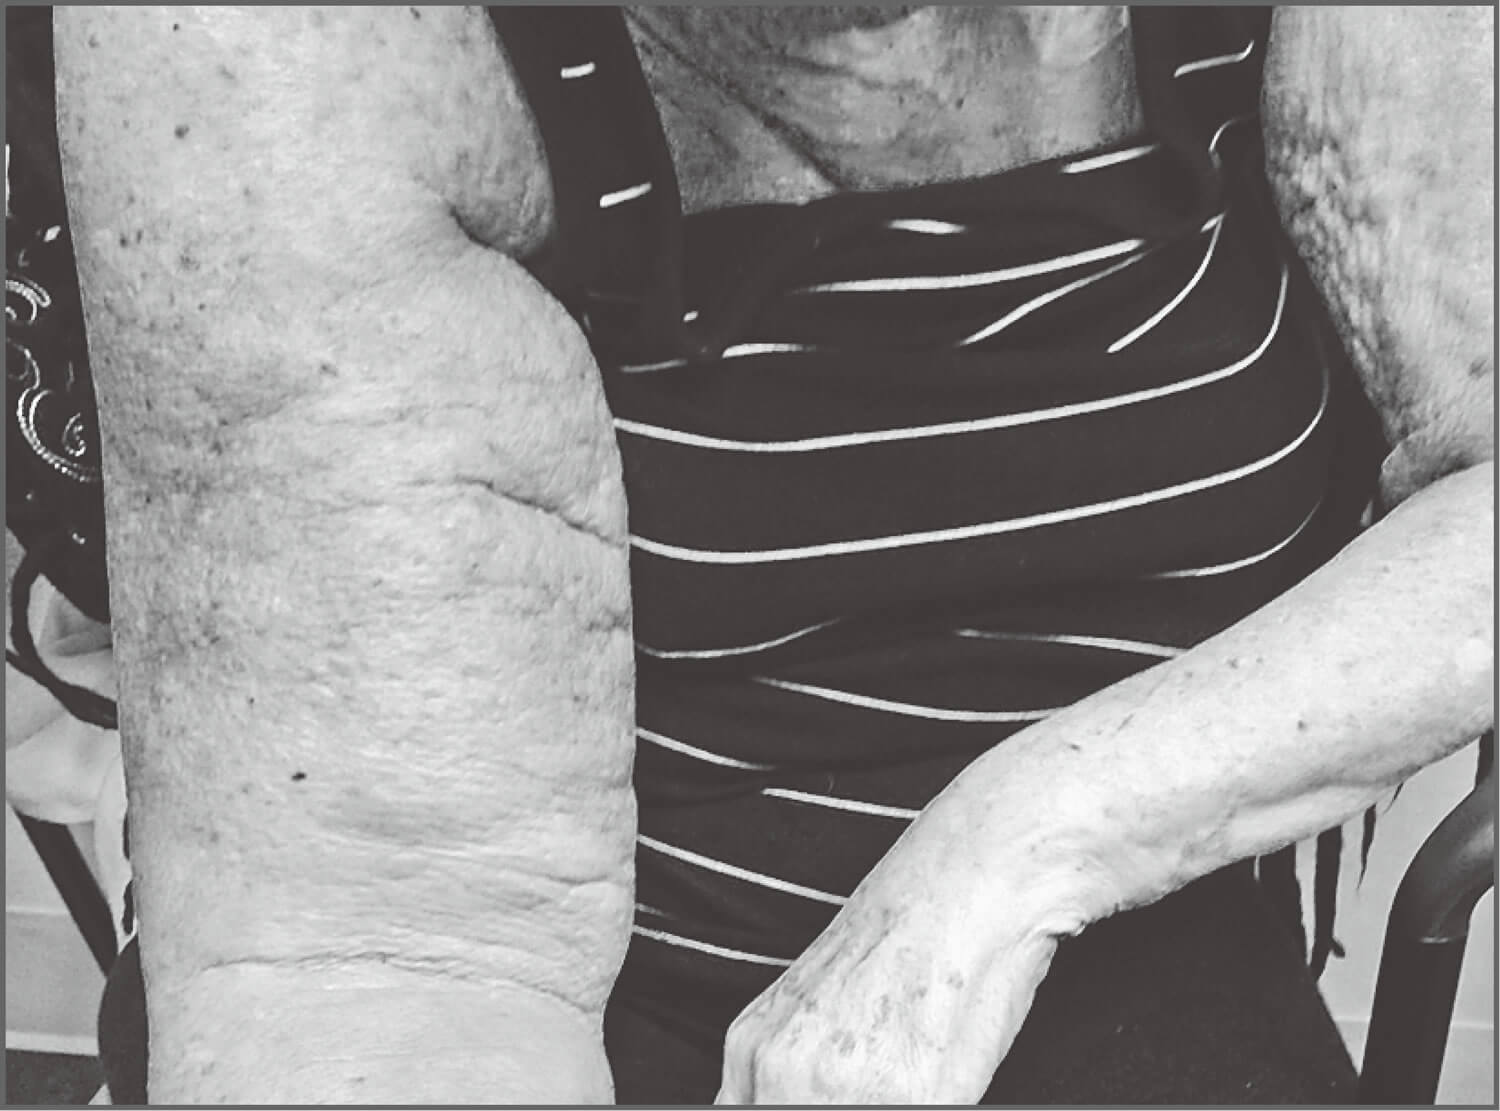 乳腺癌术后手臂水肿图-图库-五毛网